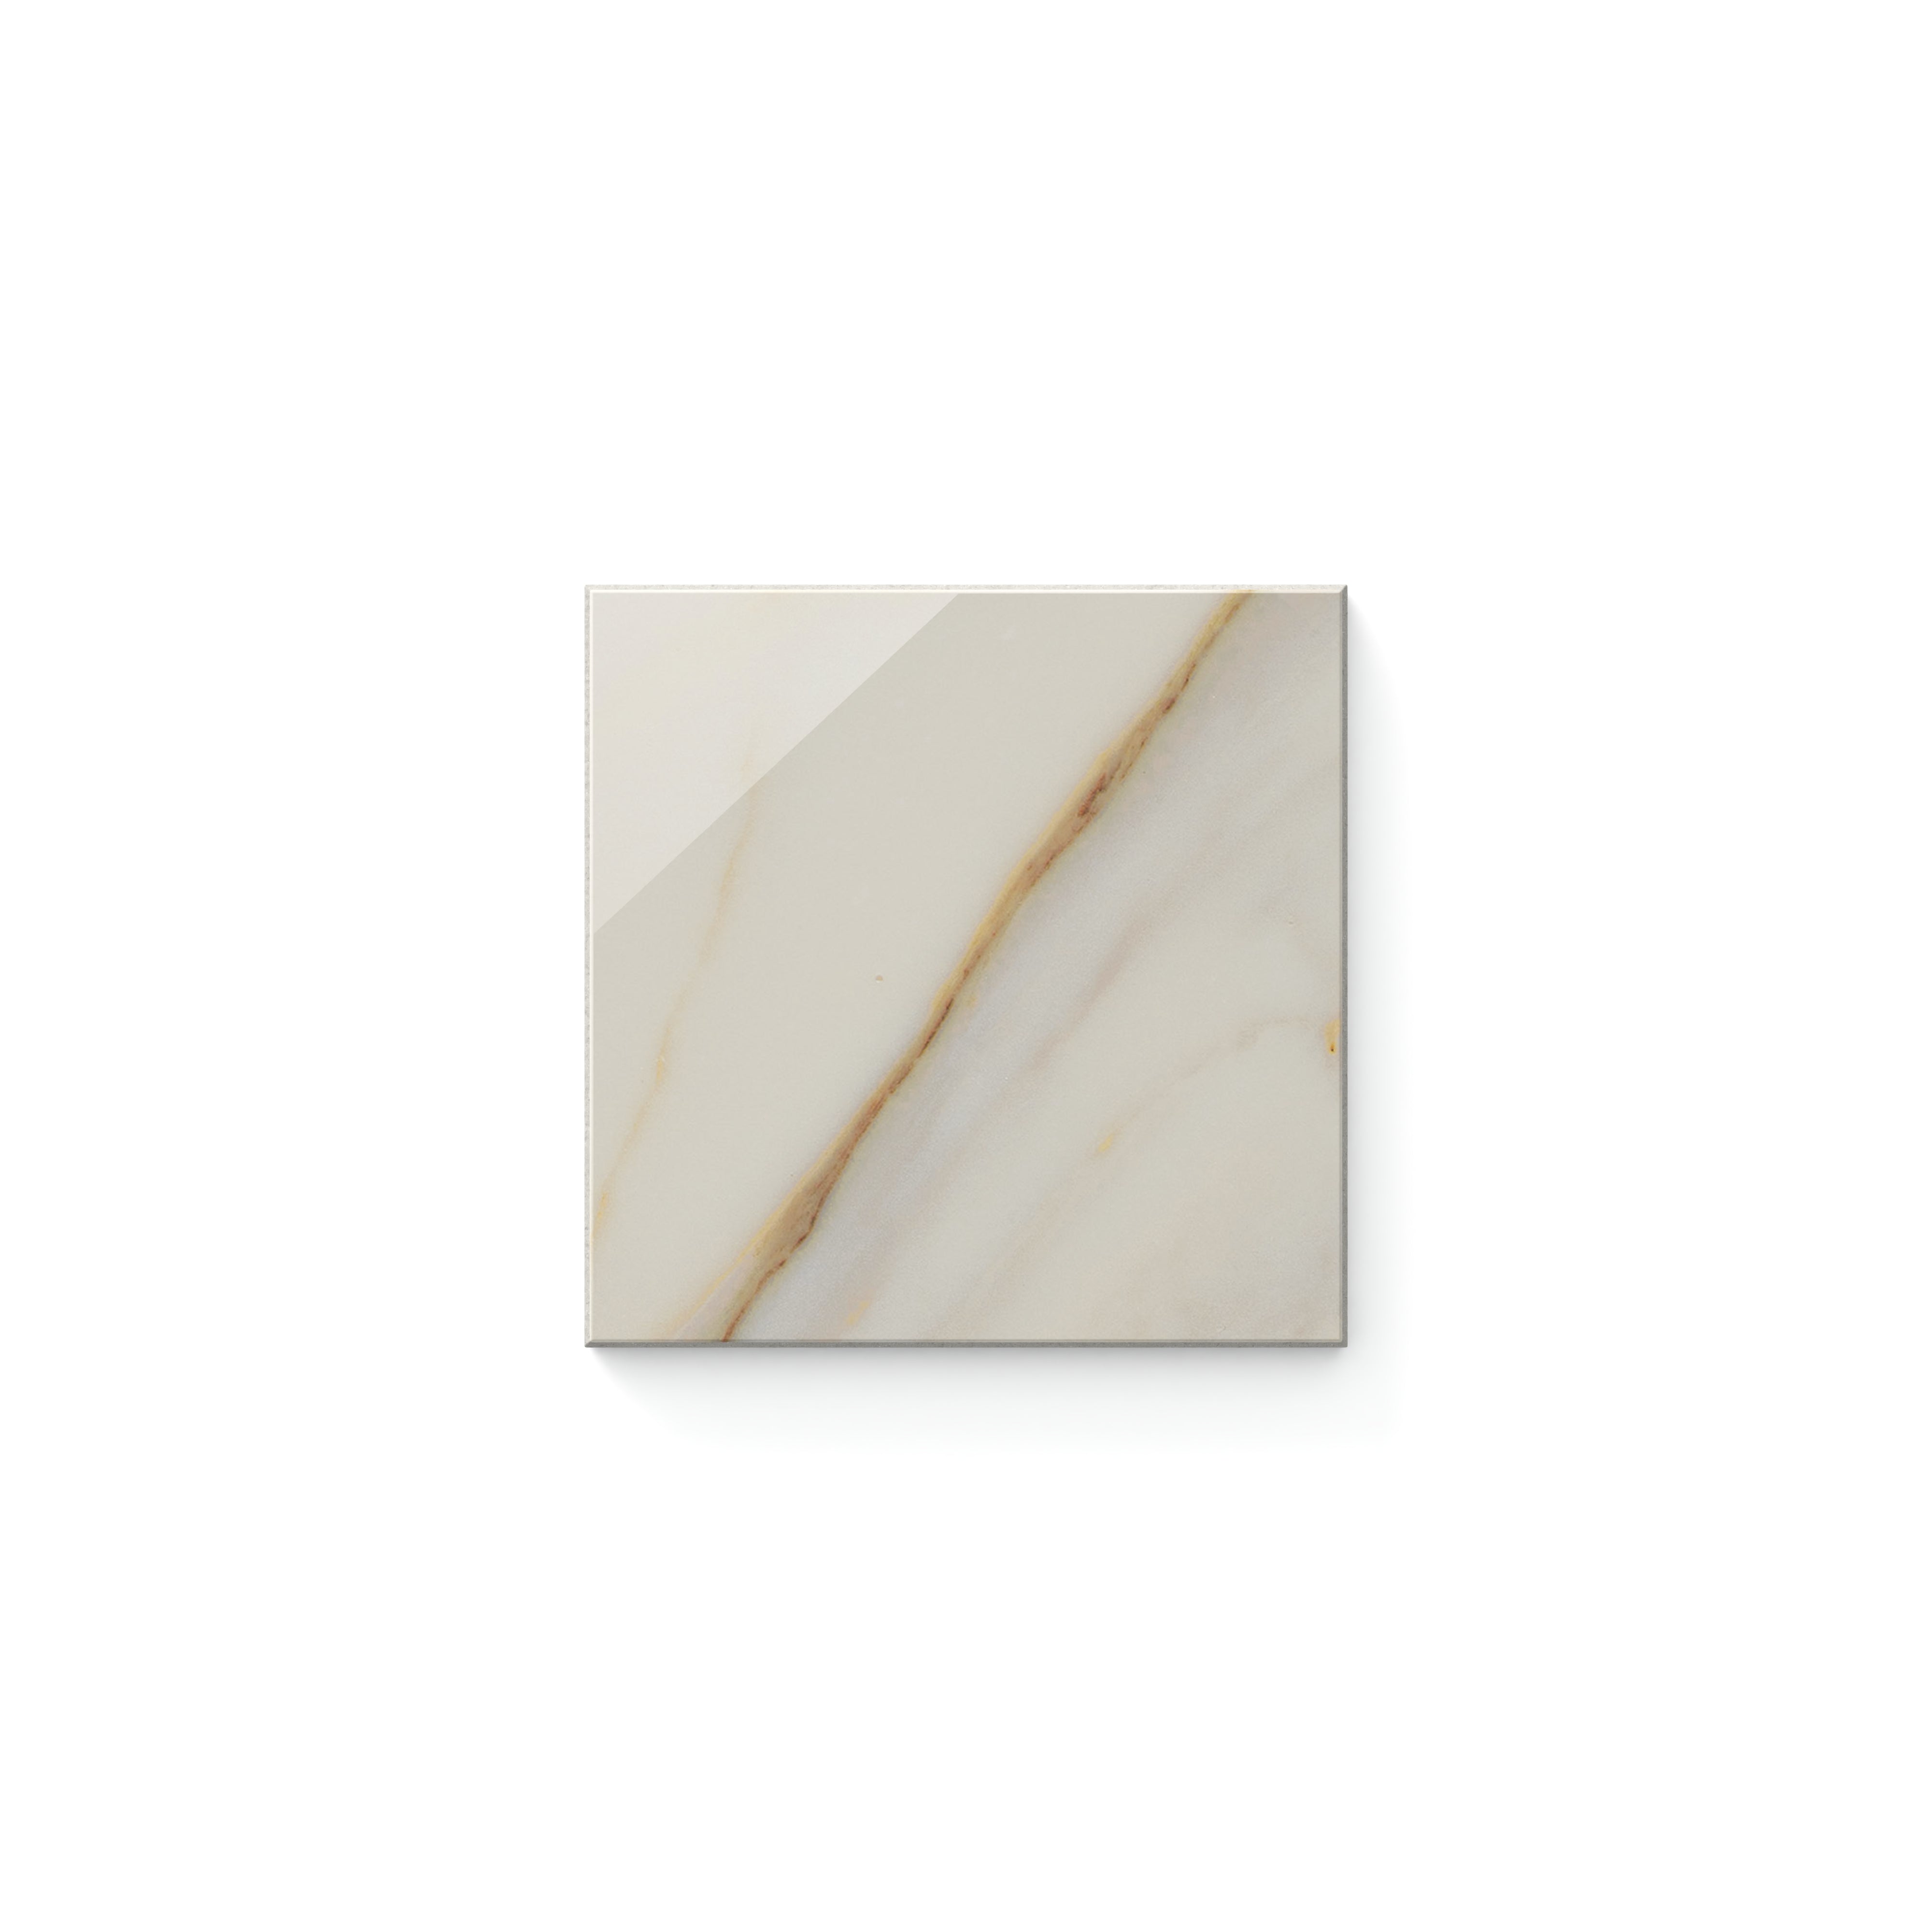 Aniston Polished Calacatta Cremo 4x4 Tile Sample